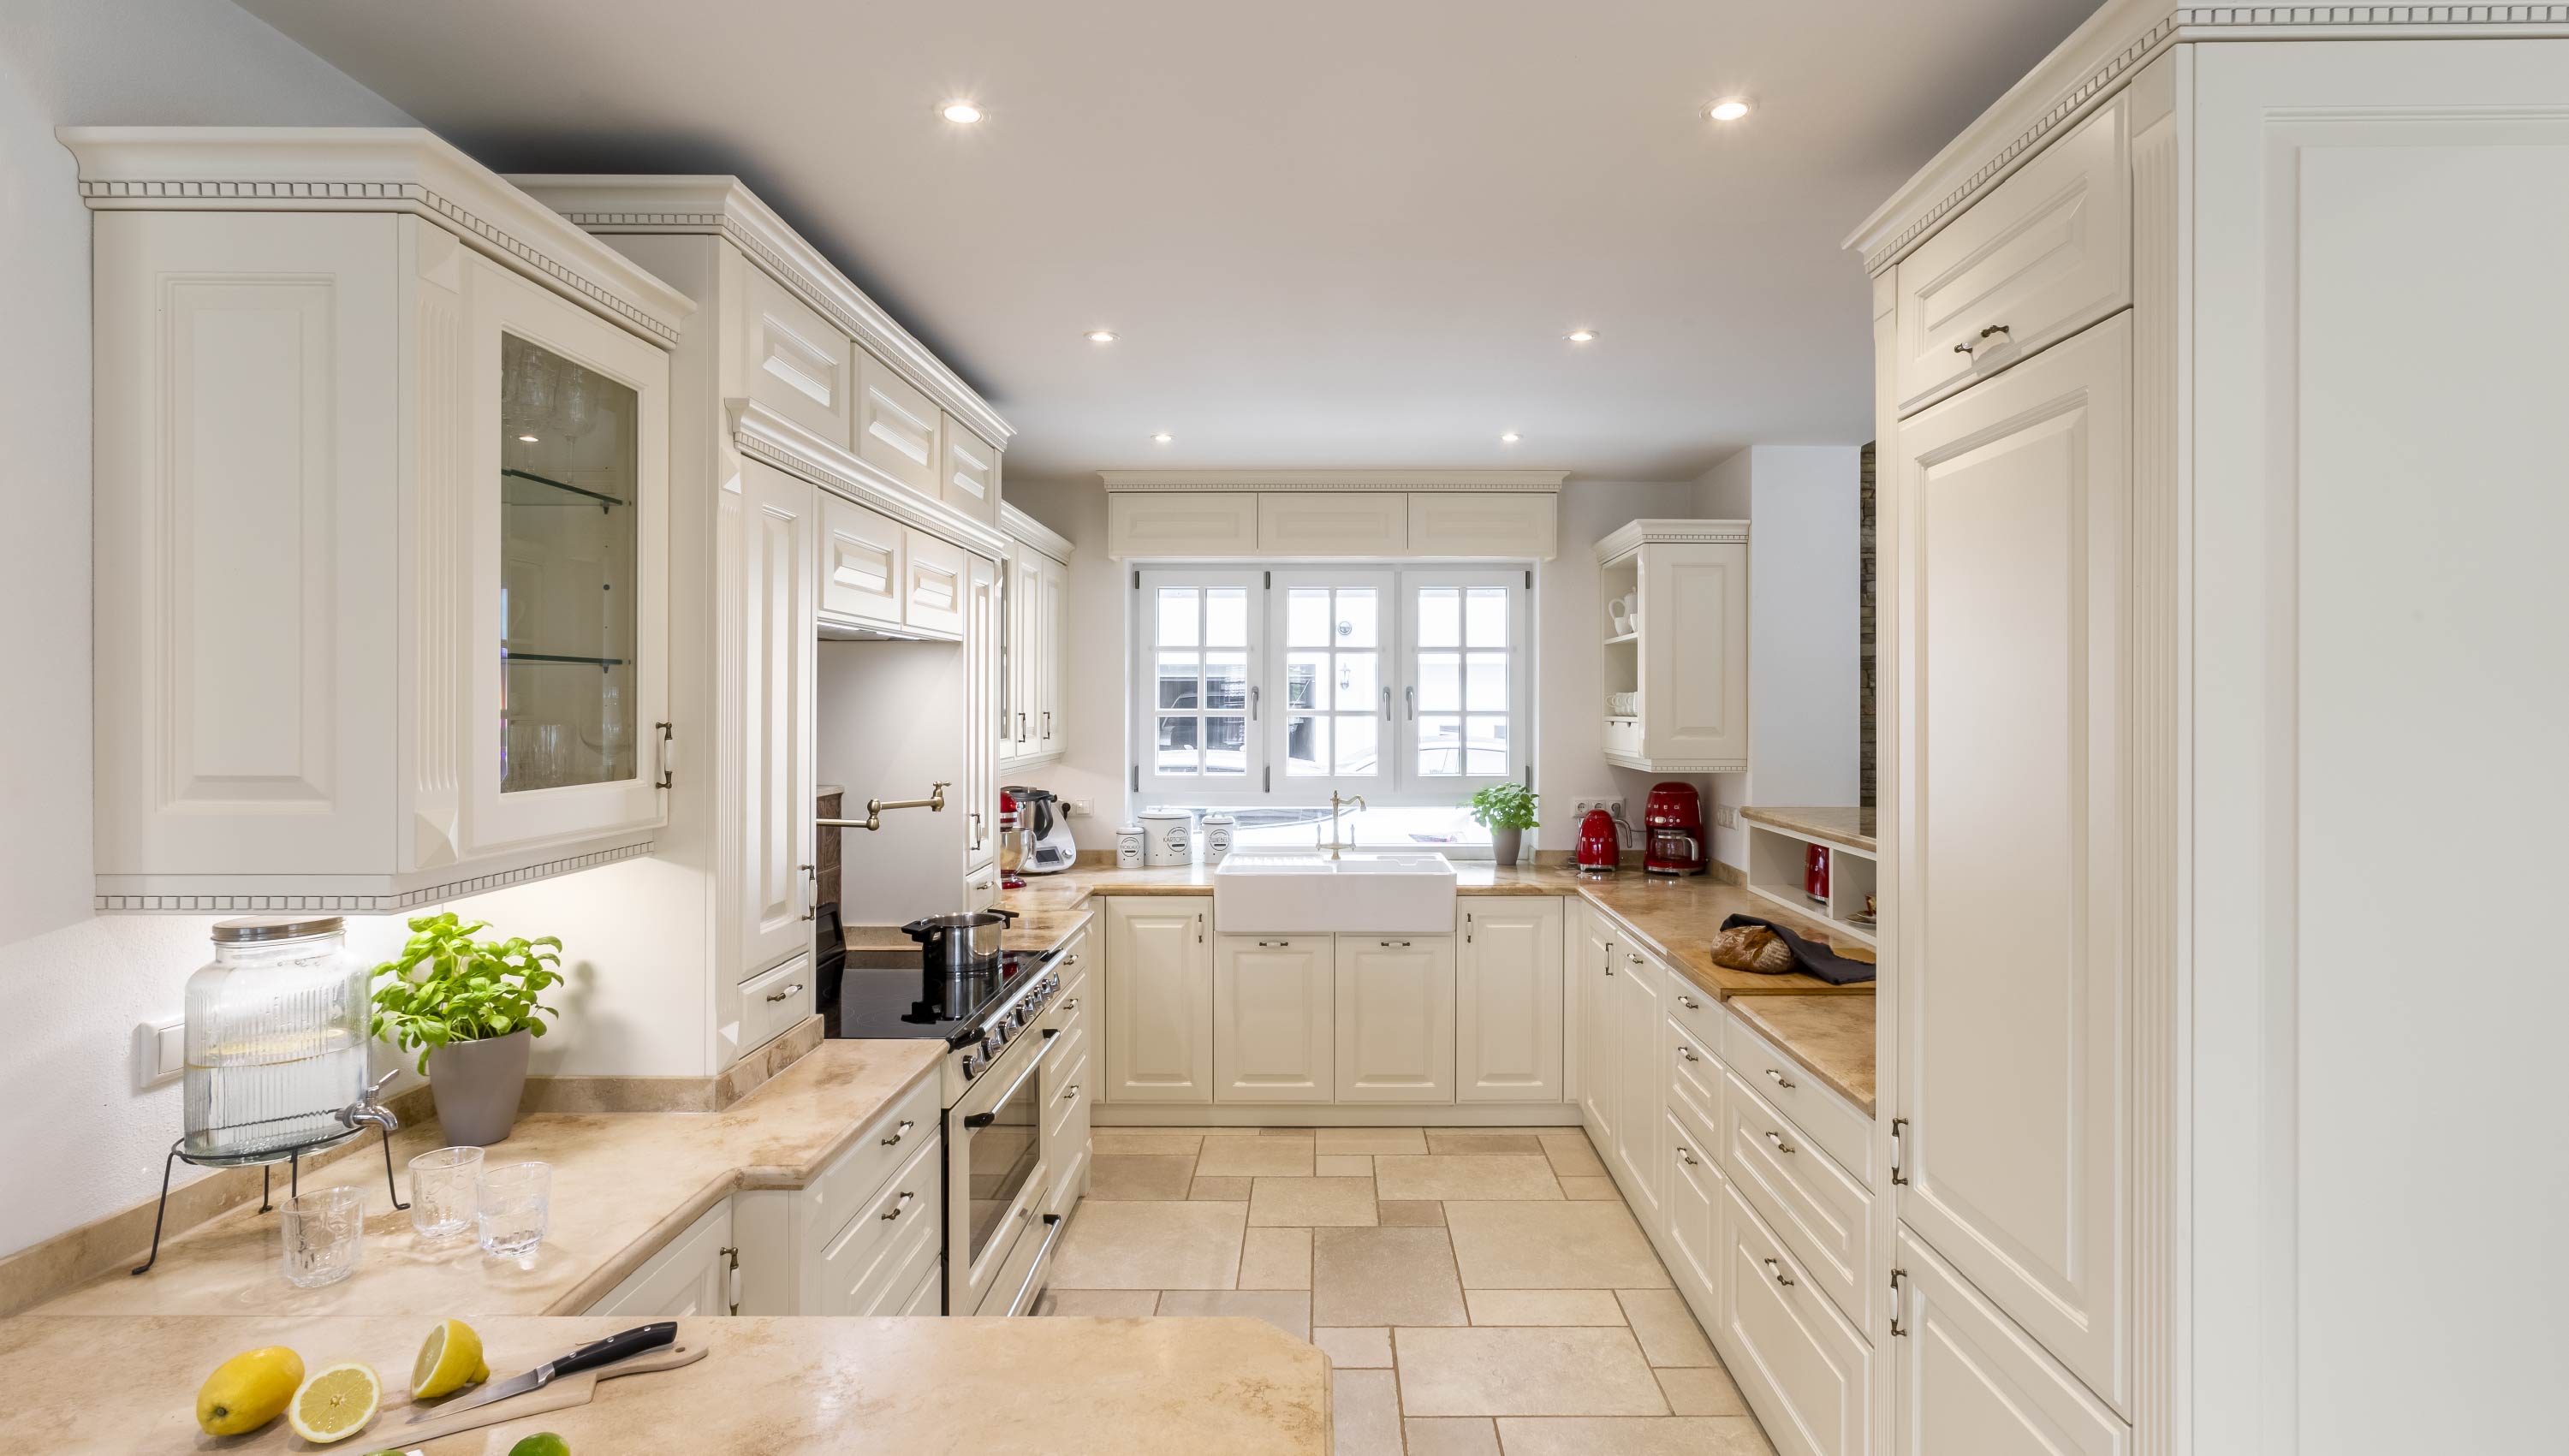 Baumann Küchen - Eine helle hochwertige Landhaus Küche mit weißen Fronten und einer Marmor Arbeitsplatte.